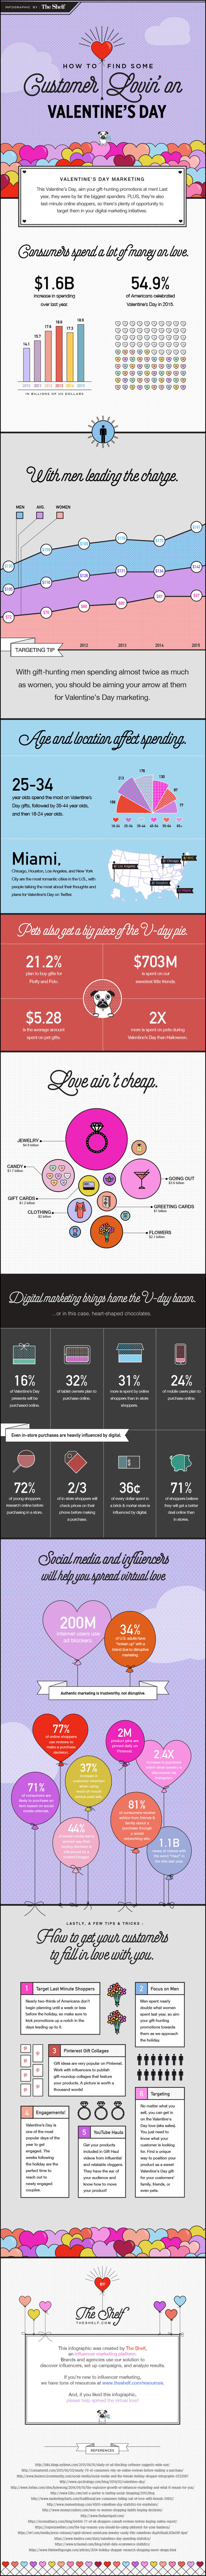 Valentinstag und digitales Marketing - Infografik